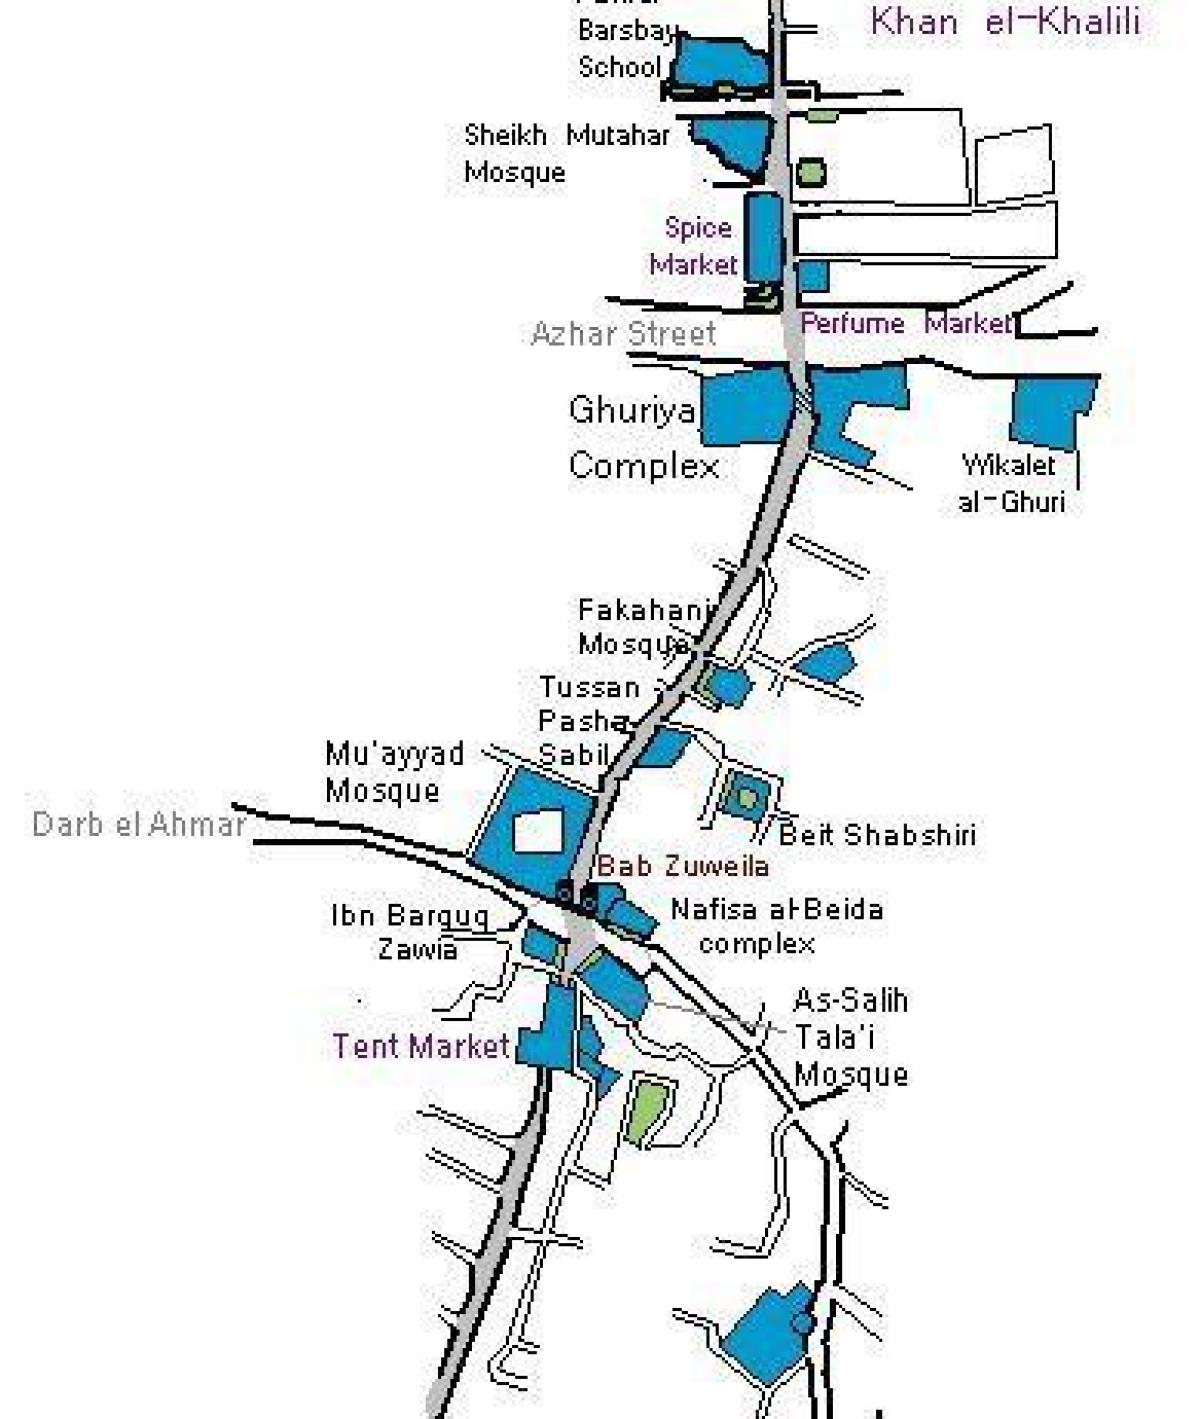 khan el khalili bazaar map